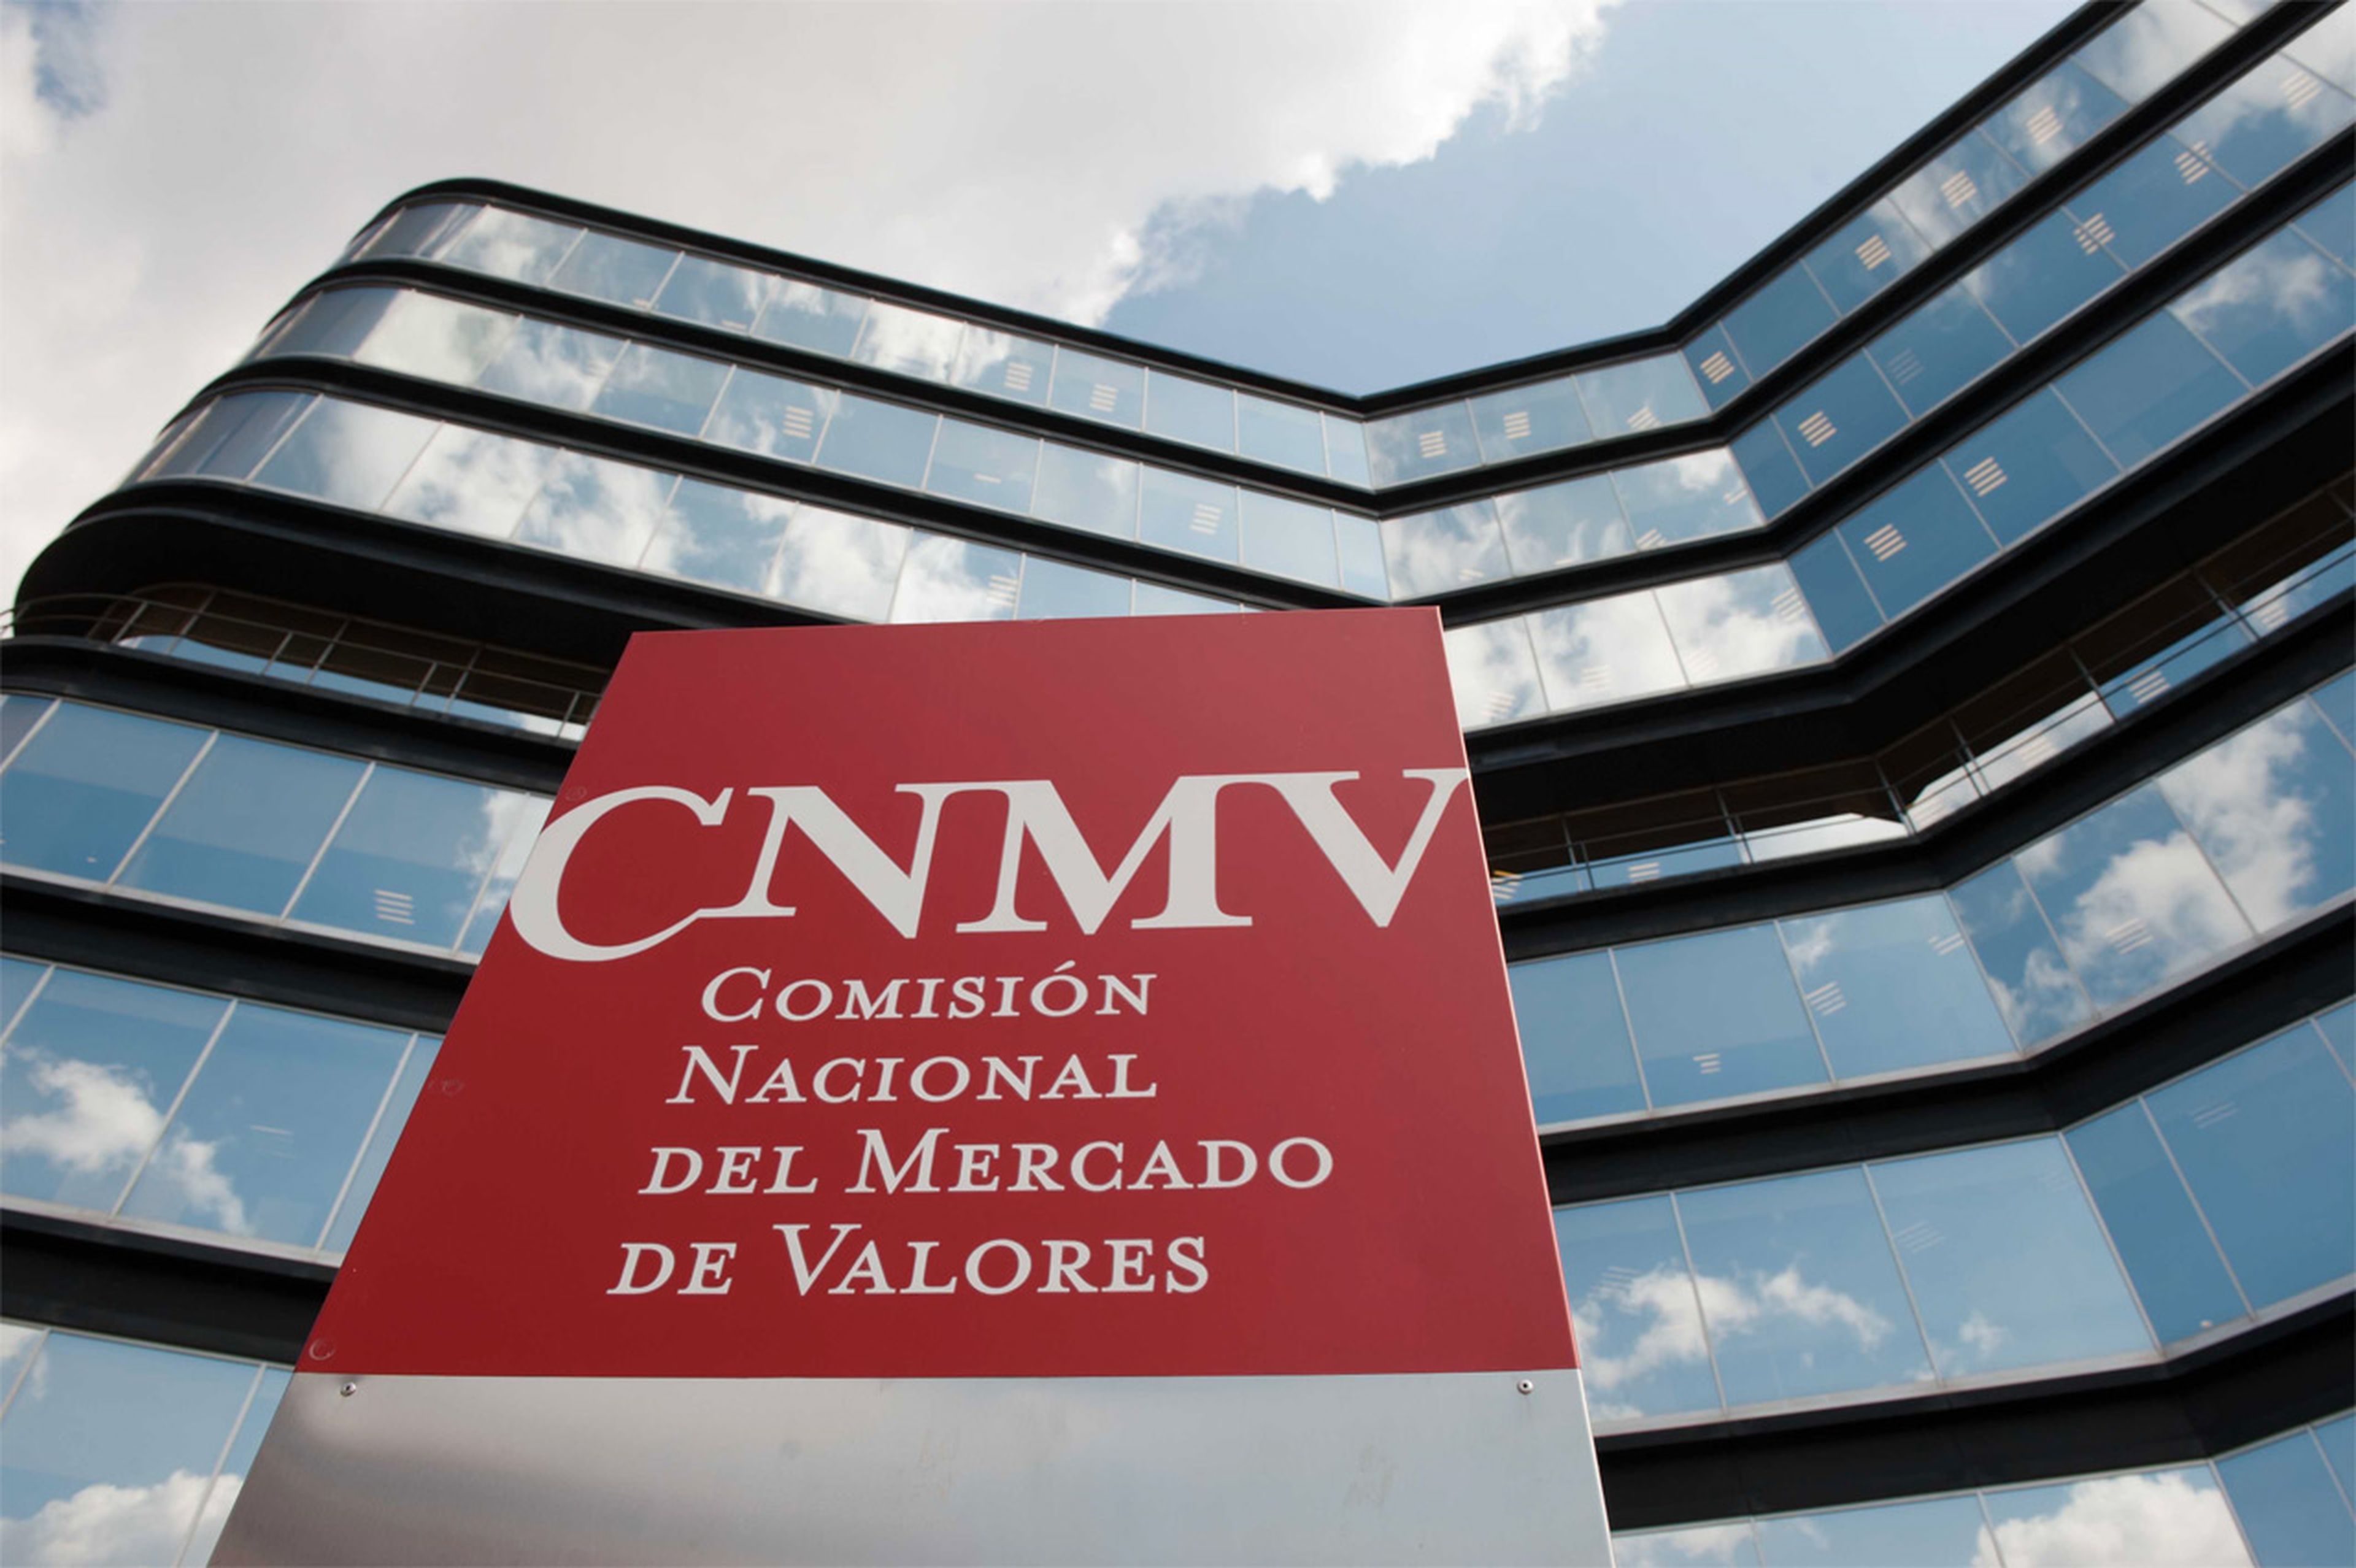 CNMV Comisión Mercado de Valores